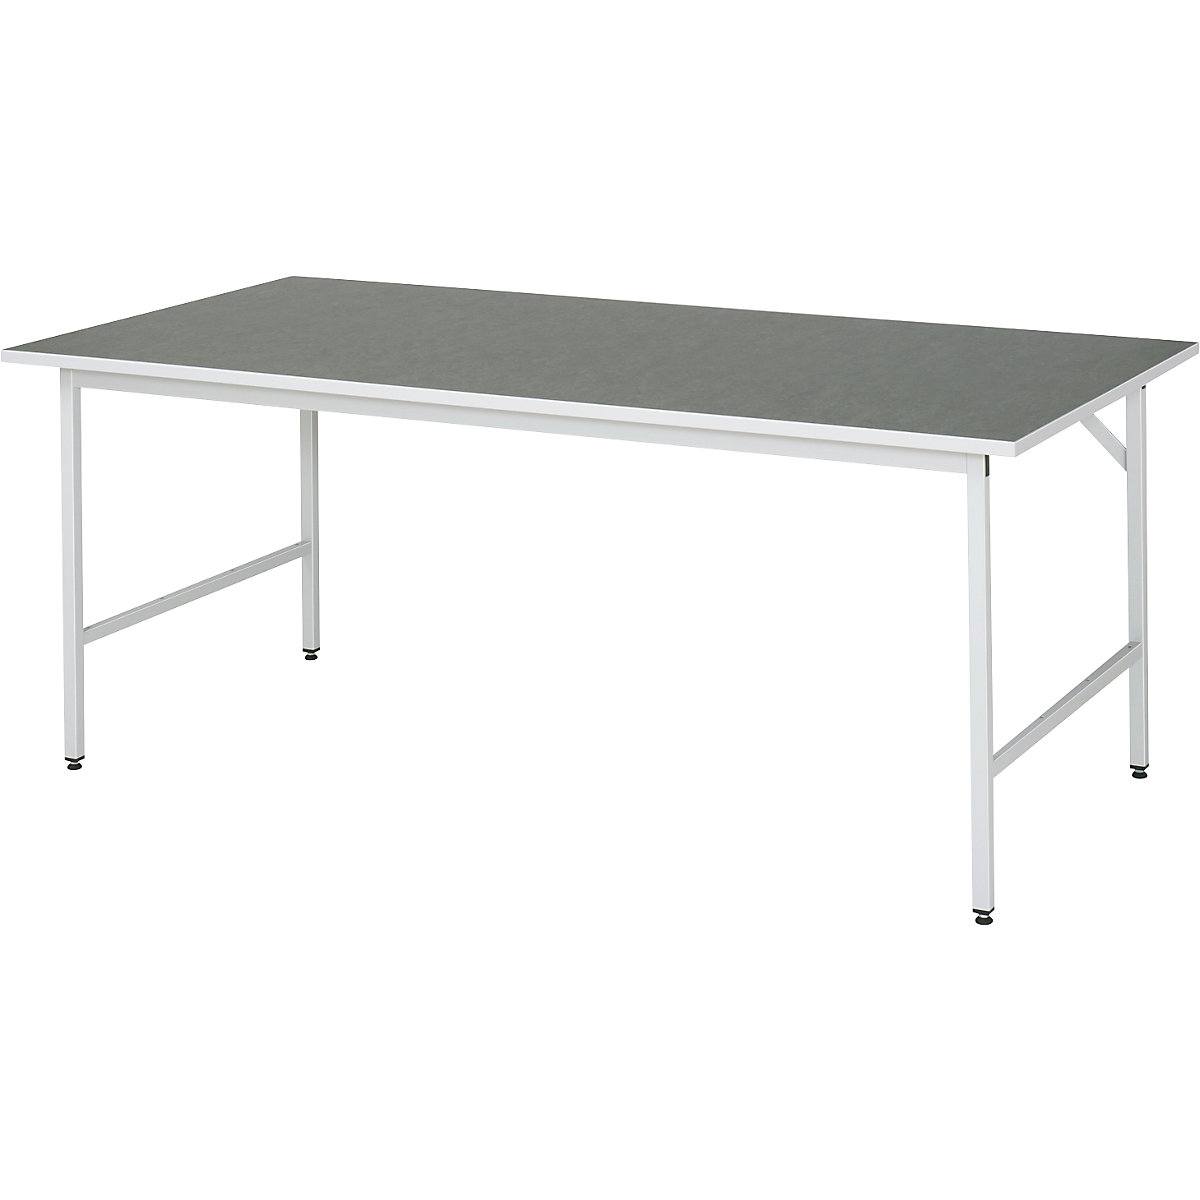 Munkaasztal, állítható magasságú – RAU, 800 – 850 mm, linóleum lap, szé x mé 2000 x 1000 mm, világosszürke-11